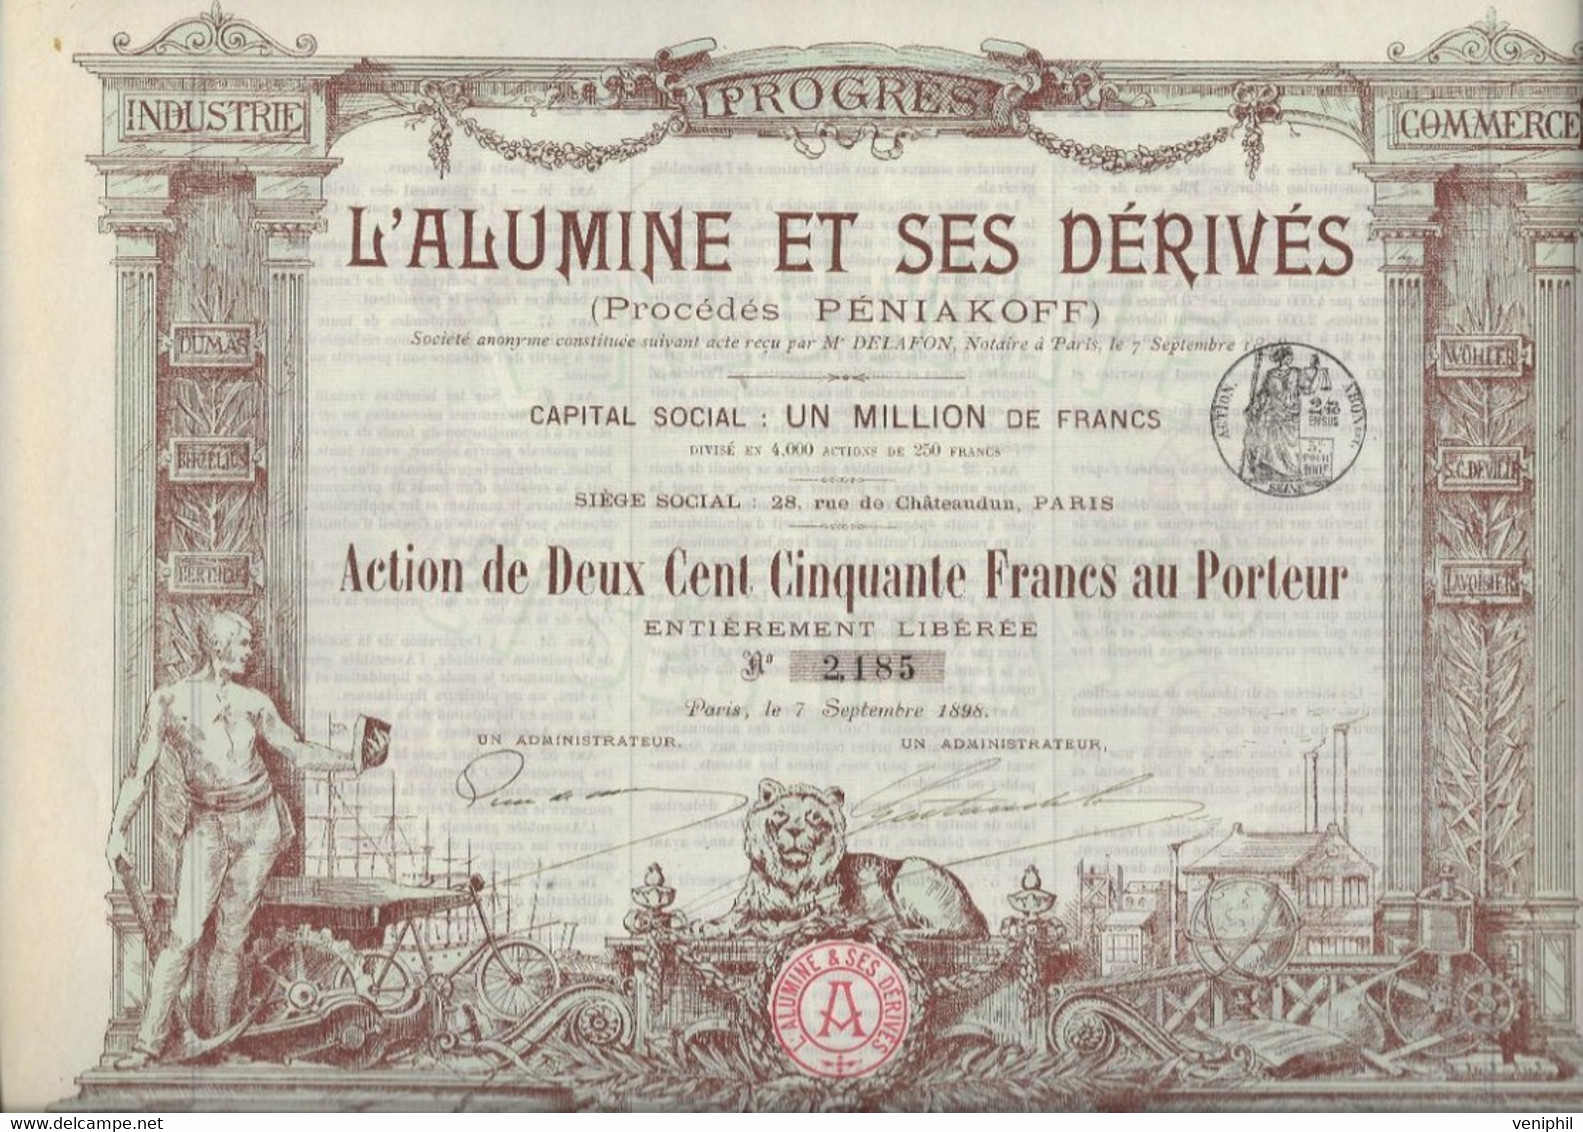 L'ALUMINE ET SES DERIVES -PROCEDE PENIAKOFF - DIVISE EN 4000 ACTIONS DE DEUX CENT CINQUANTE FRANCS -ANNEE 1898 - Mines